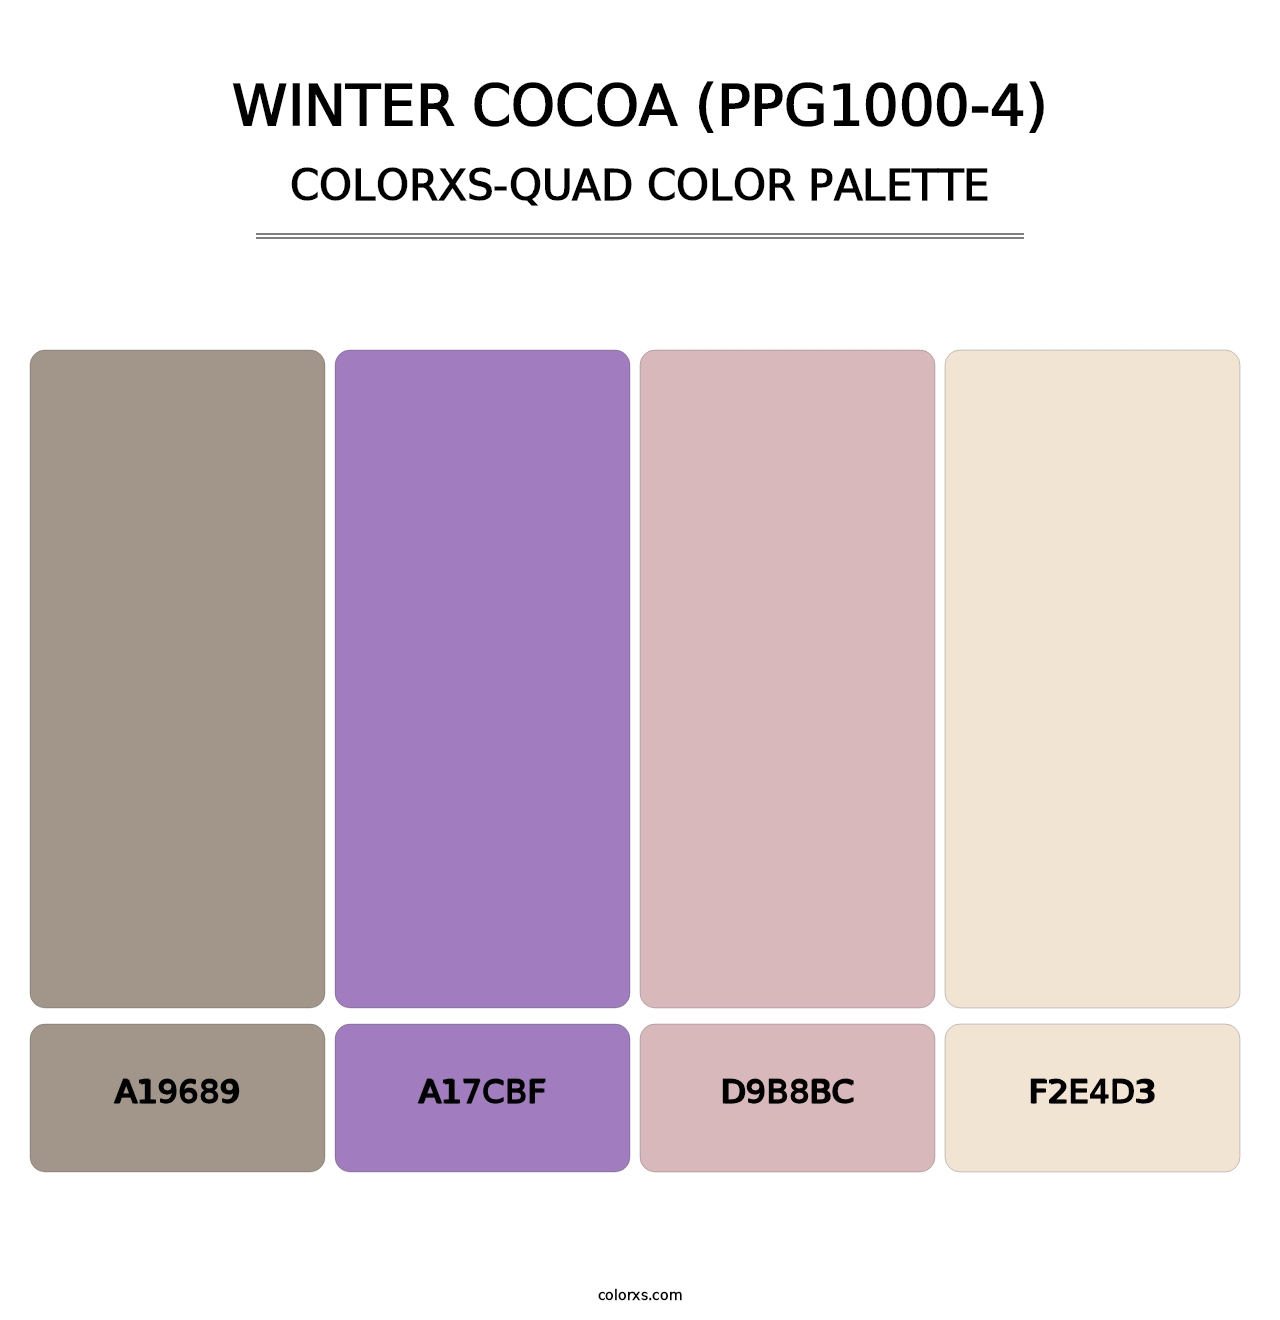 Winter Cocoa (PPG1000-4) - Colorxs Quad Palette